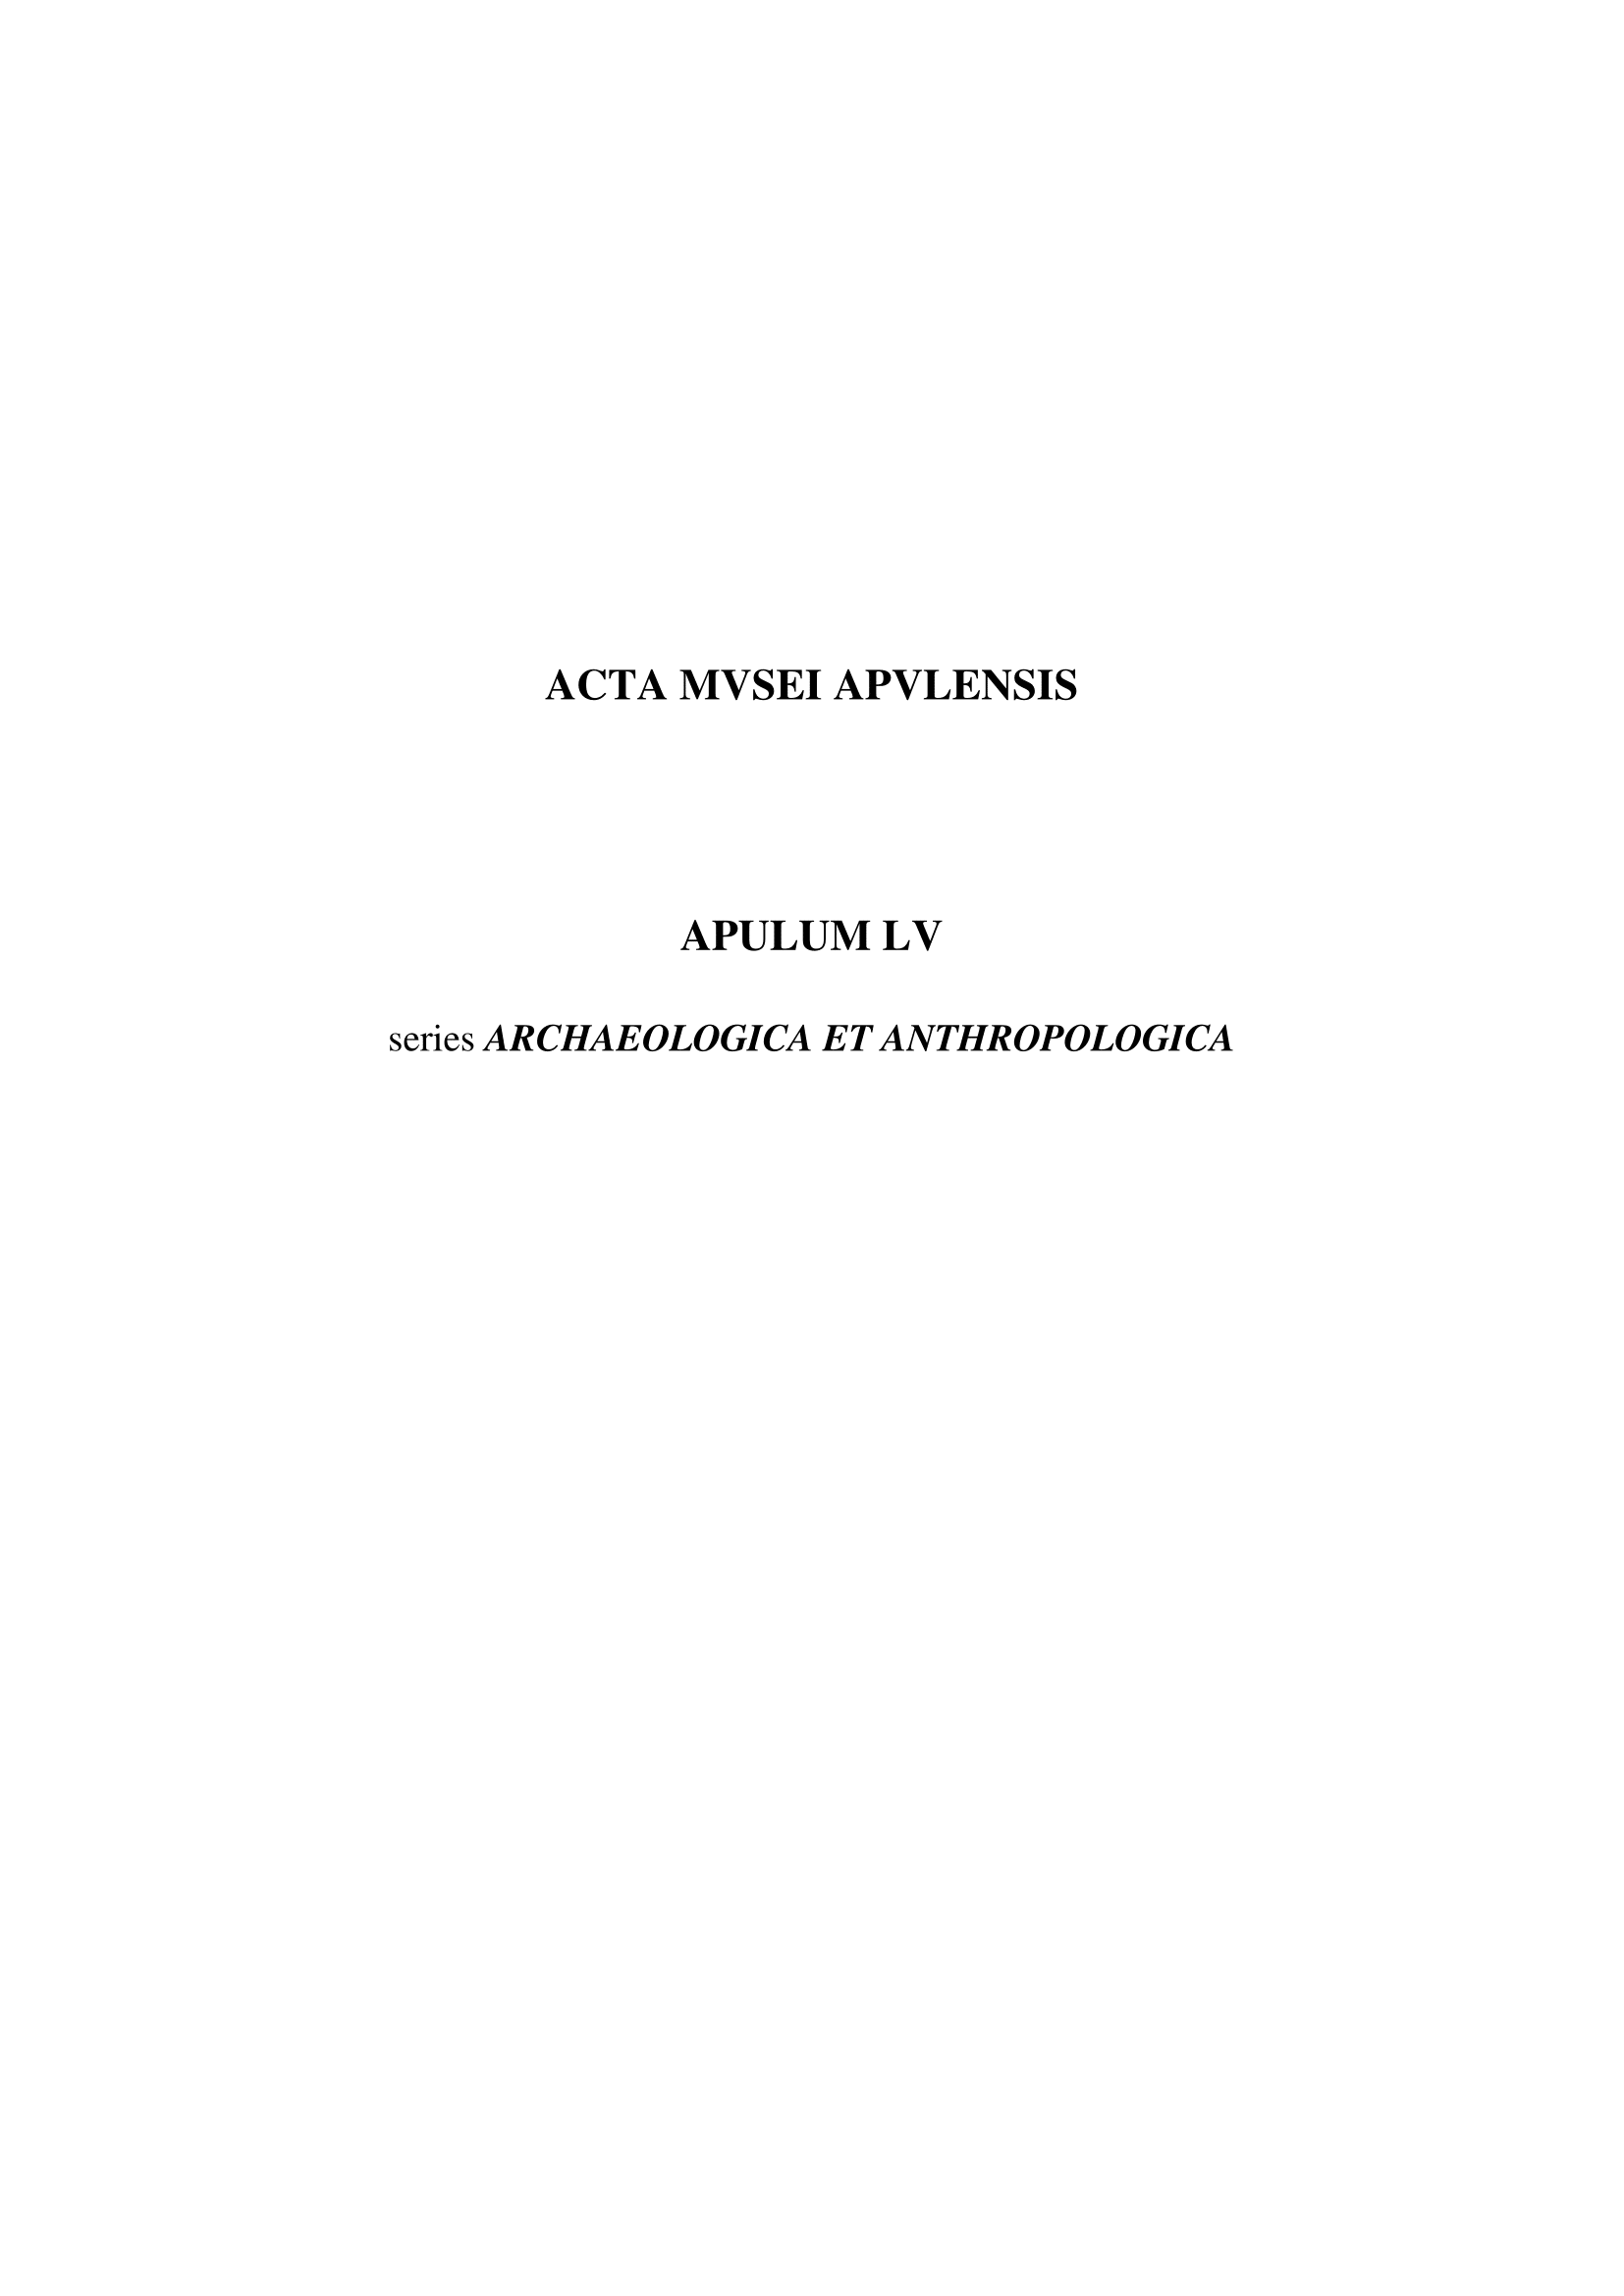 THE CATEGORIZATION OF THE FUNERAL ARTEFACTS FROM ALBA IULIA - IZVORUL ÎMPARATULUI CEMETERY SITE Cover Image